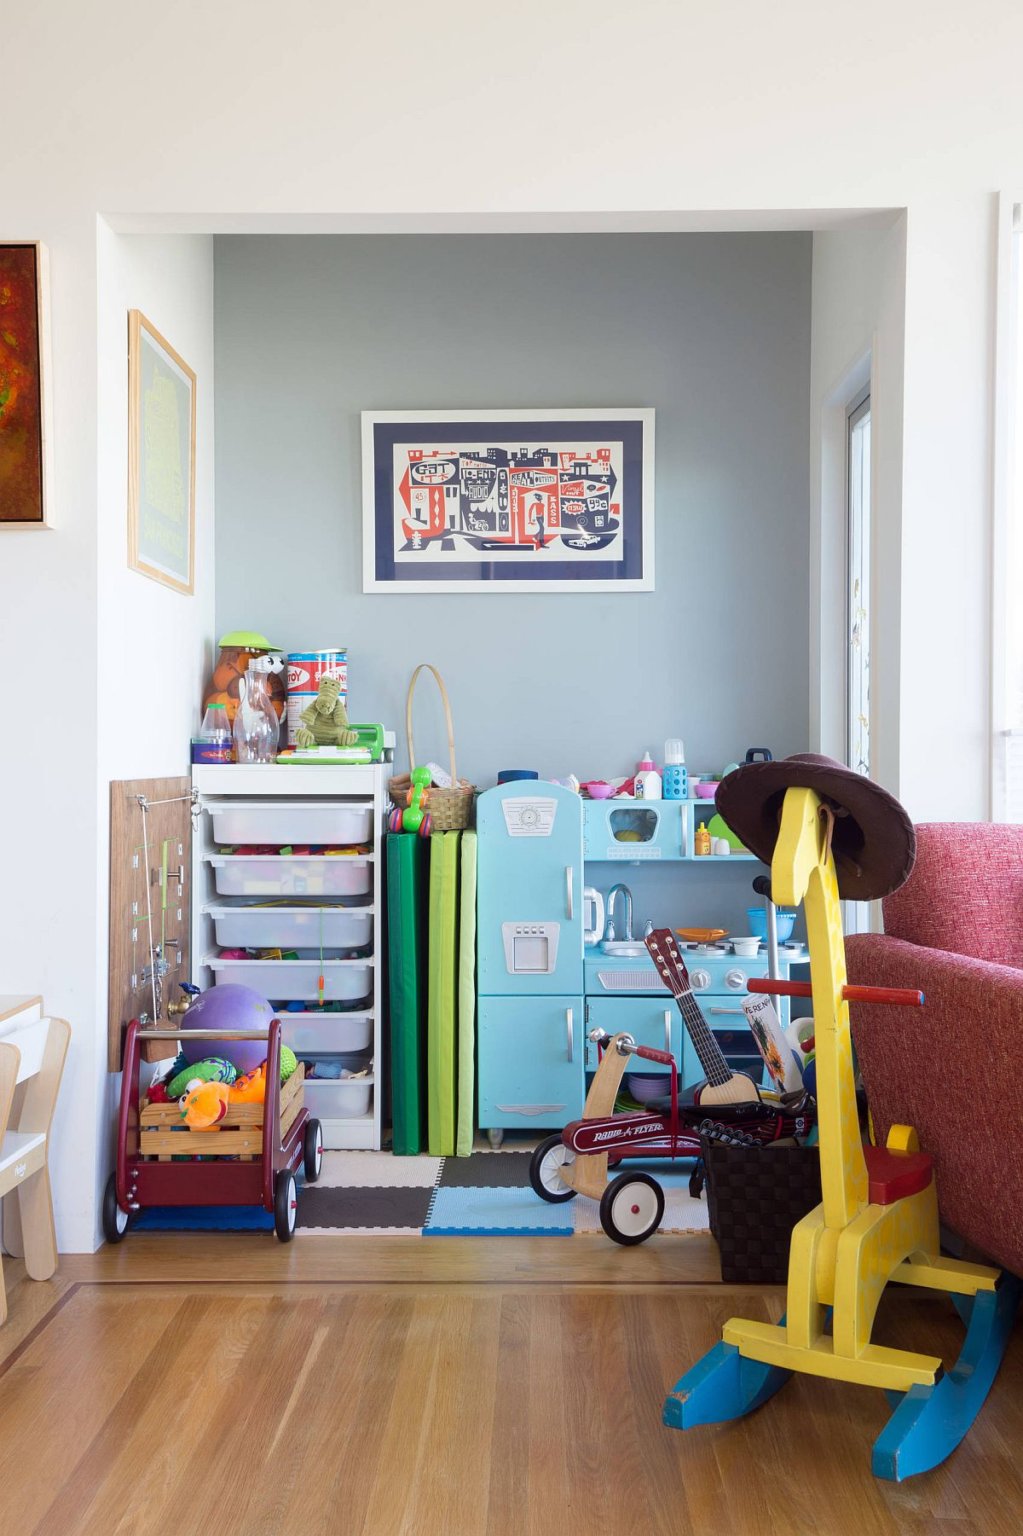 Hình ảnh sân chơi trong phòng ngủ của bé với thảm trải màu sắc, tủ kệ nhỏ xinh